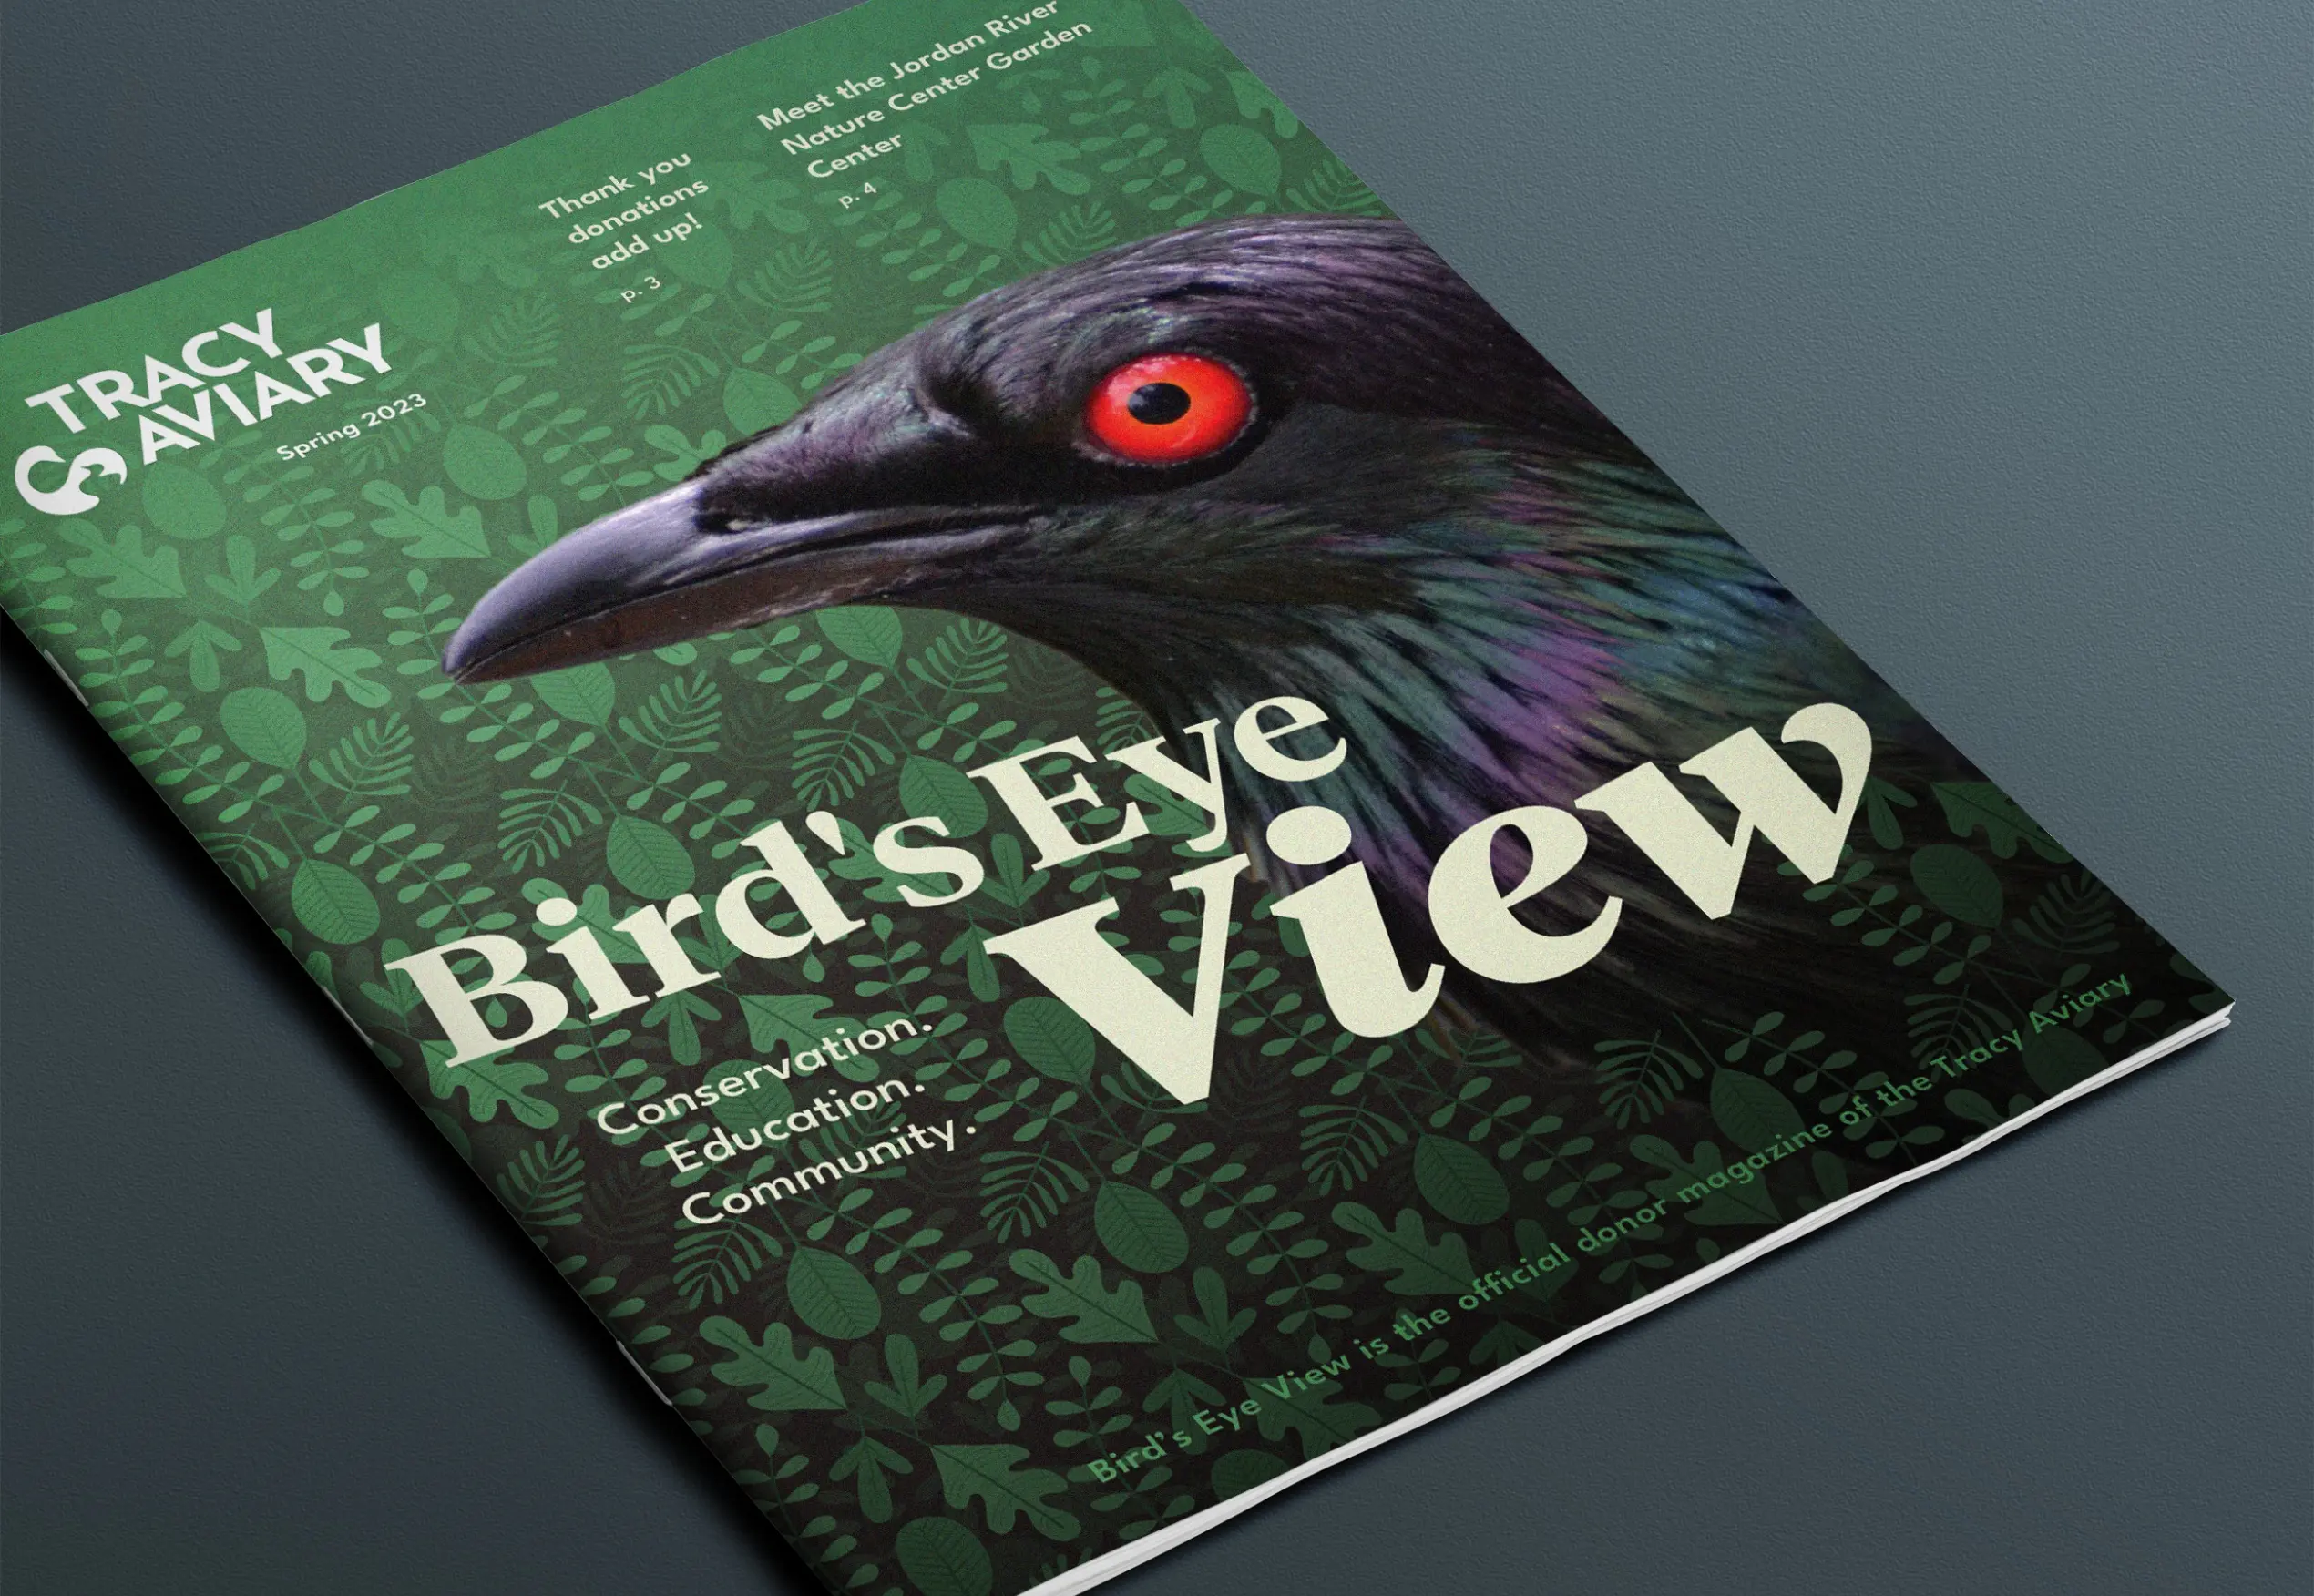 Tracy Aviary's Birds Eye View